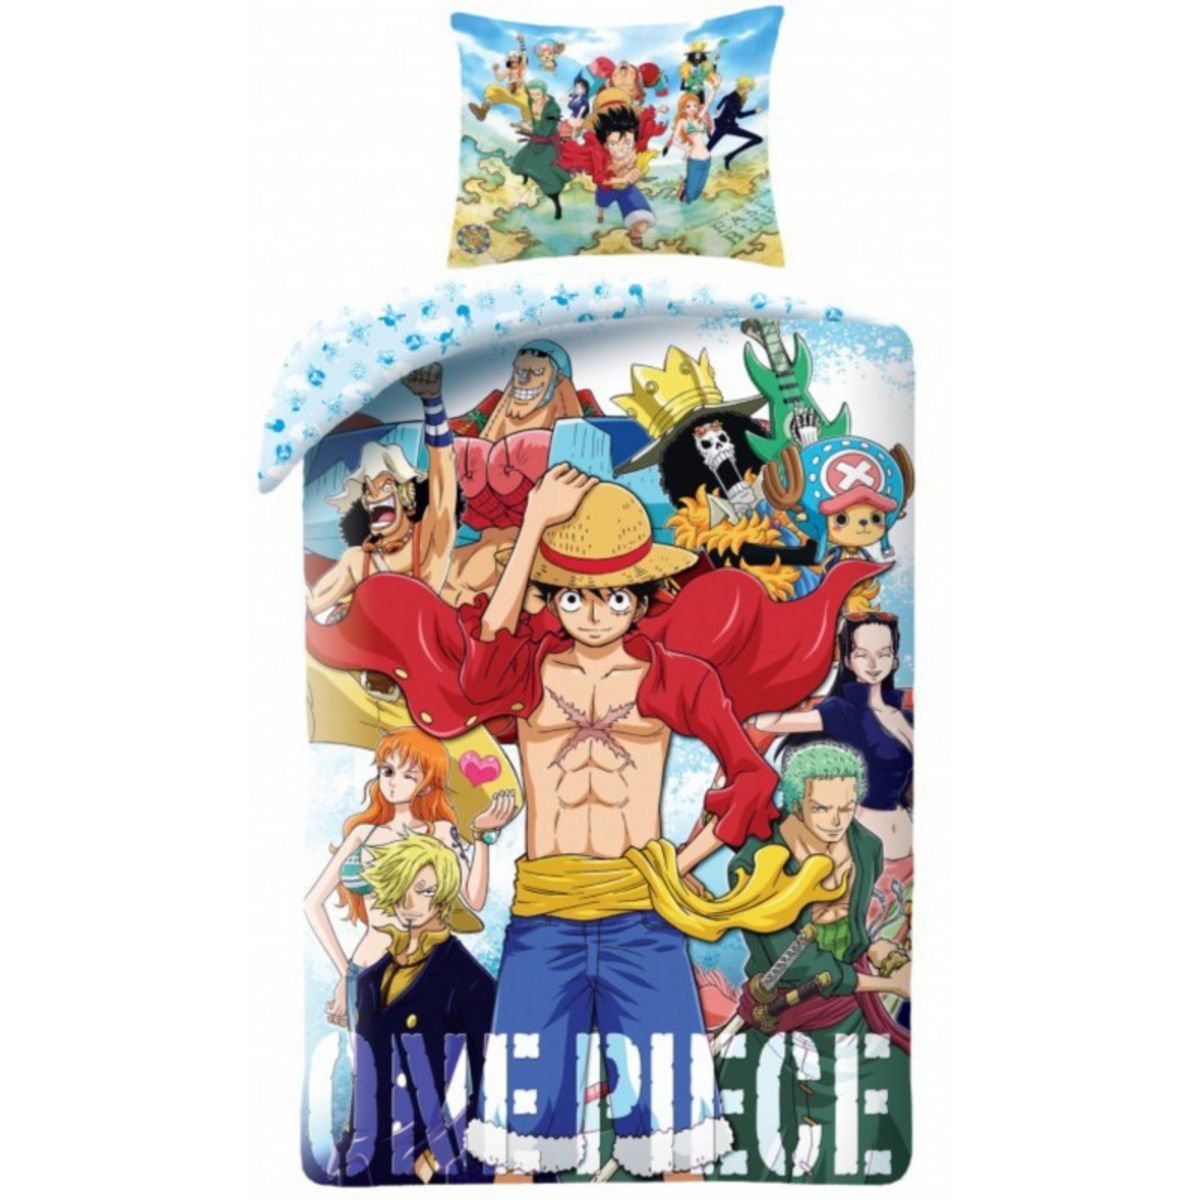 One Piece - Parure de lit enfant 1 place - Housse de Couette